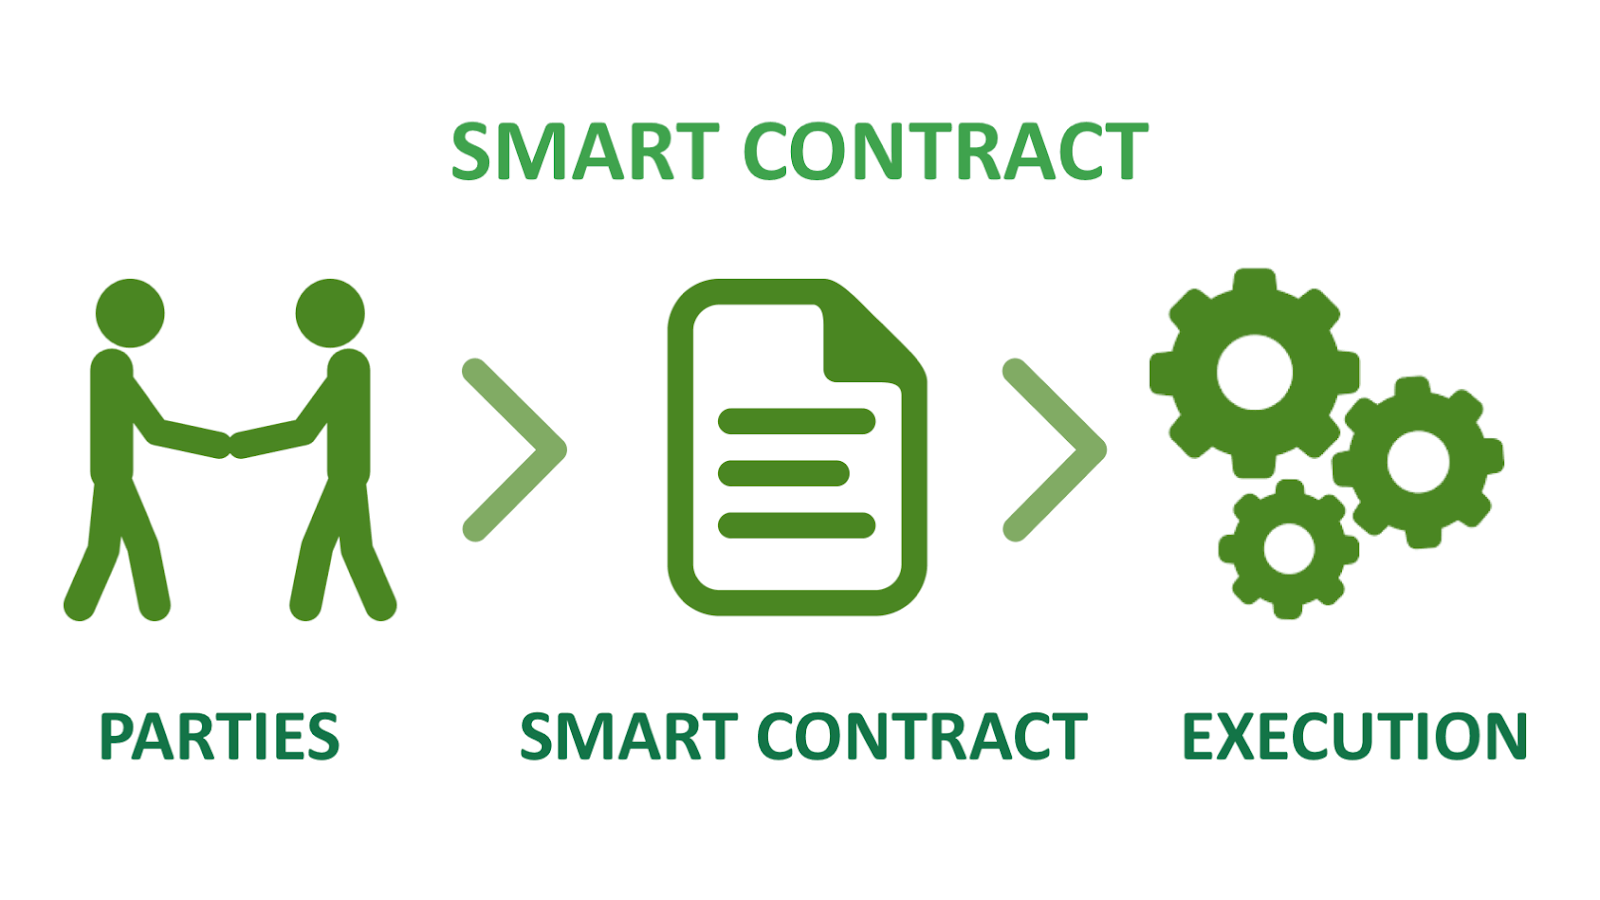 Smart contract security audits proceedure